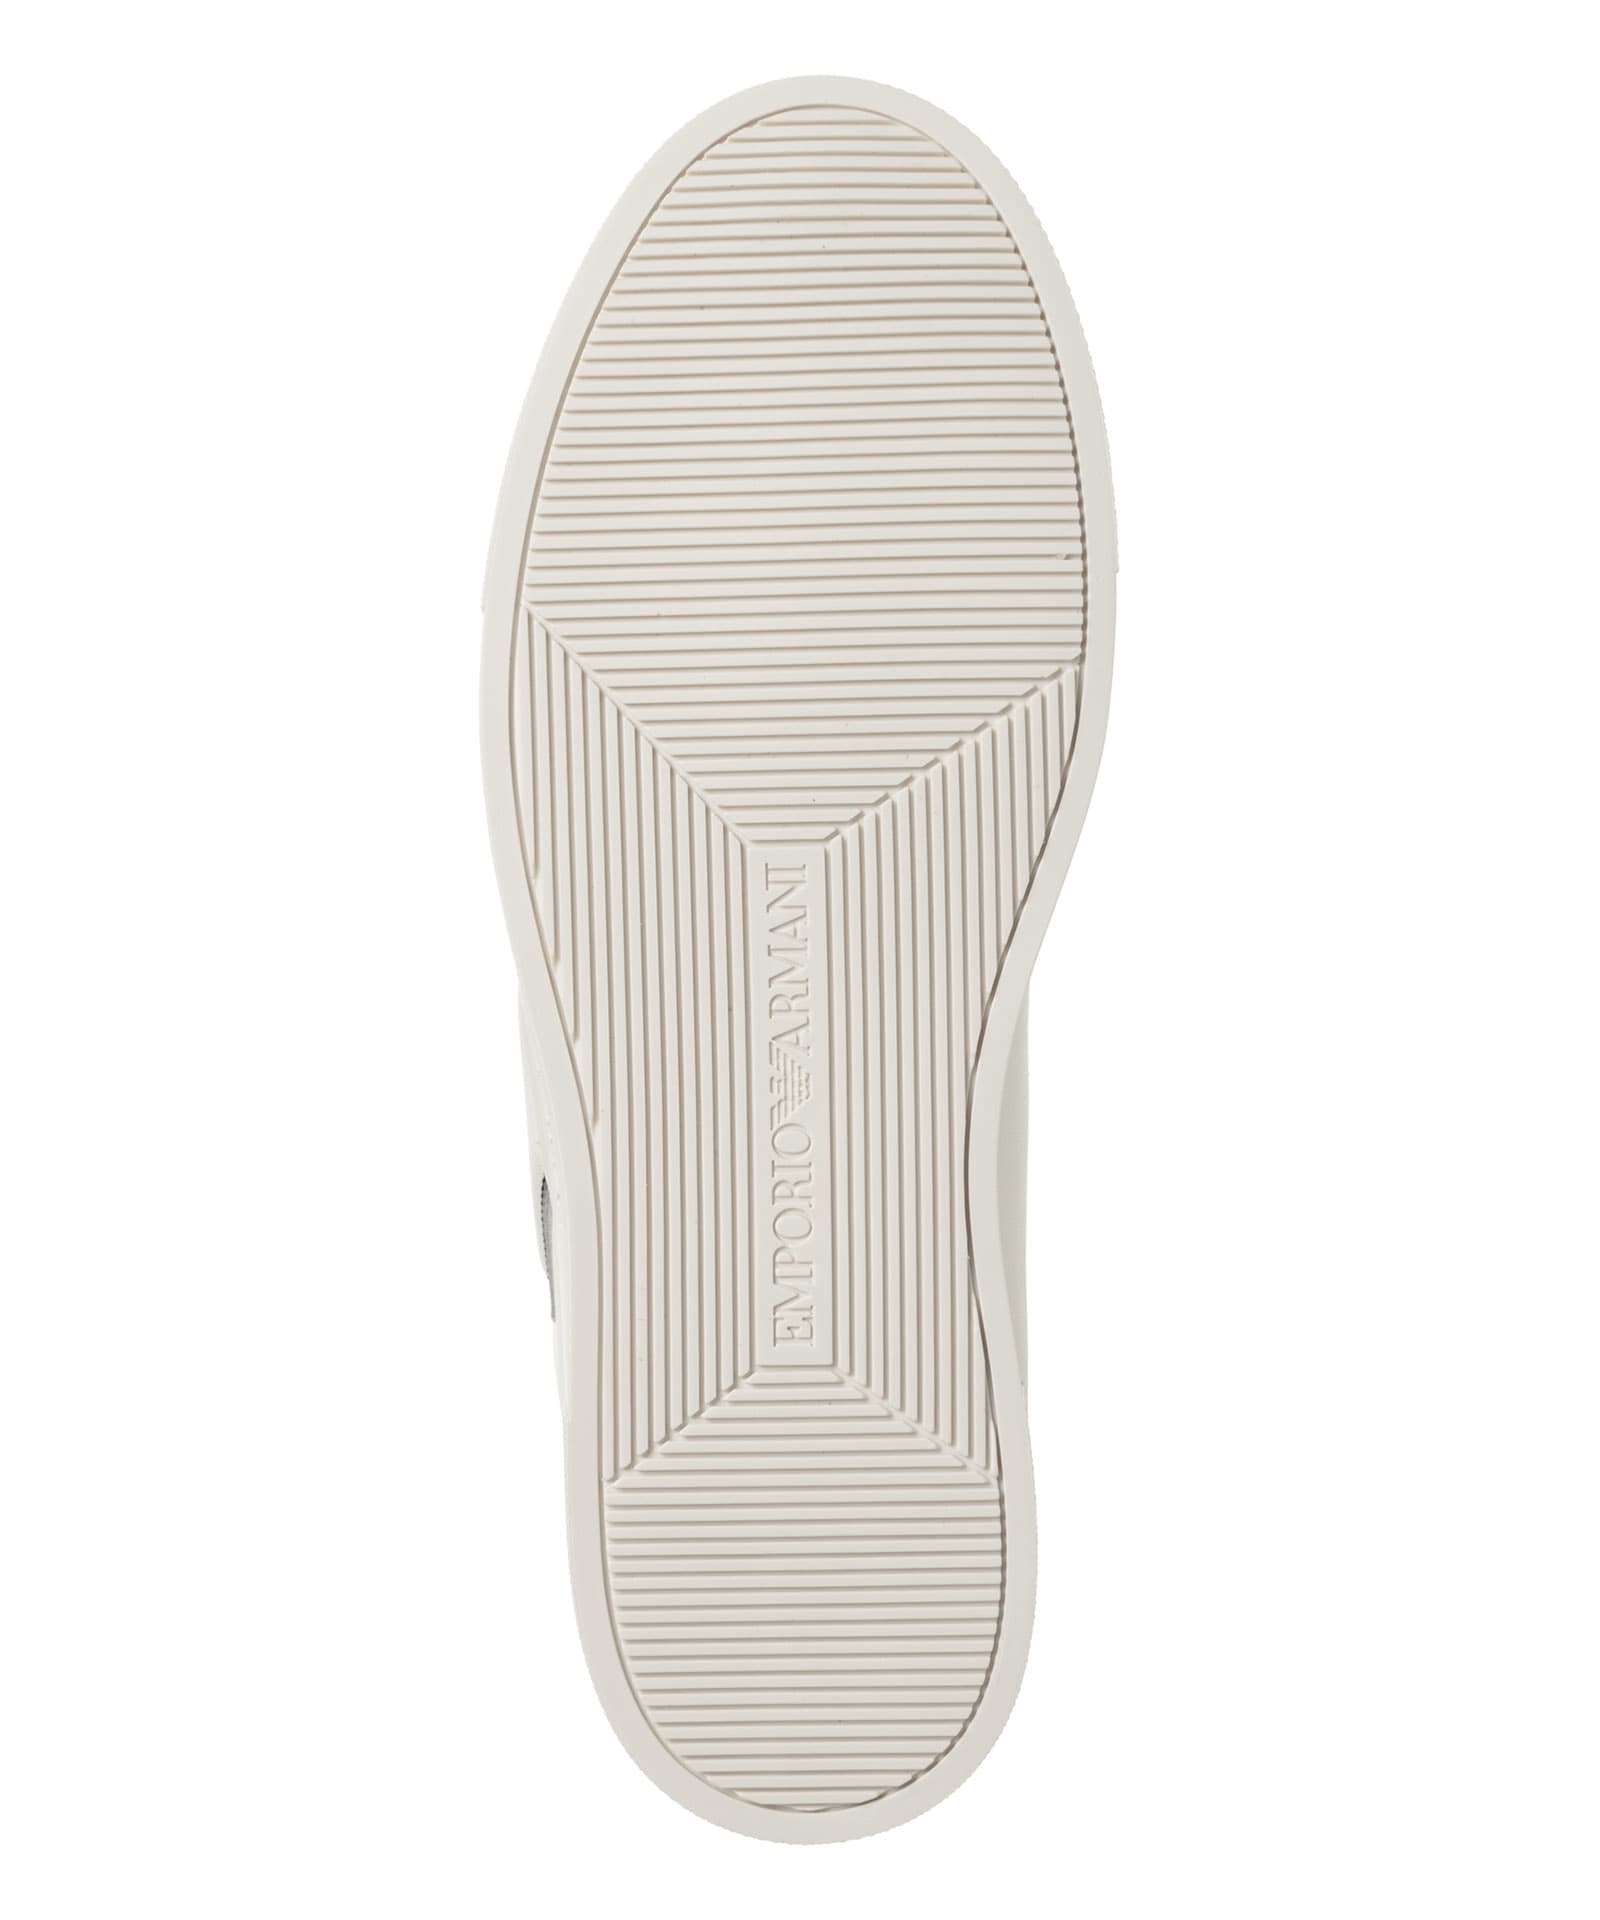 Shop Emporio Armani Leather Sneakers In White